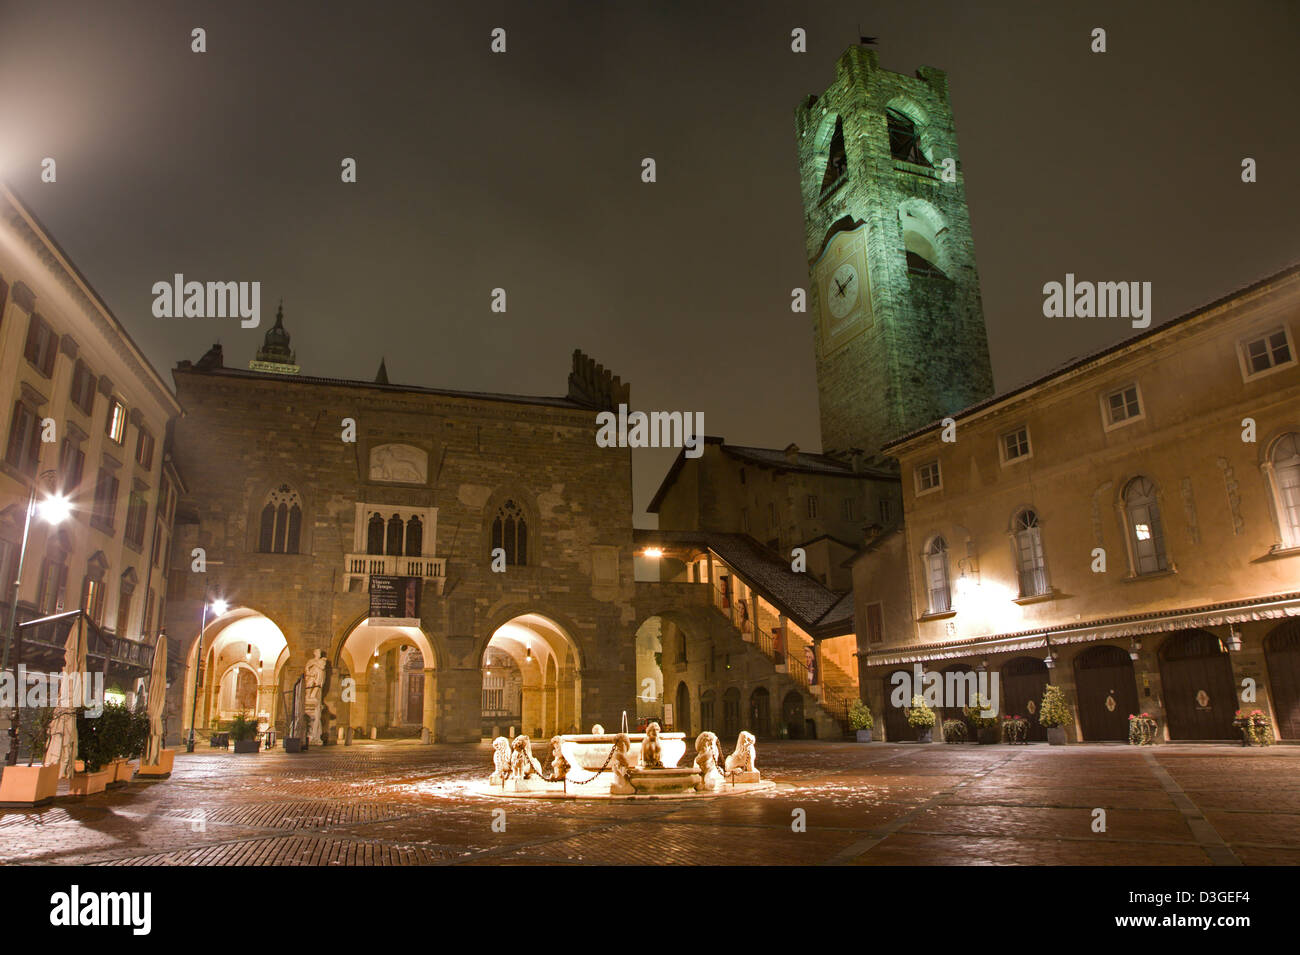 Bergamo - piazza vecchia at night Stock Photo